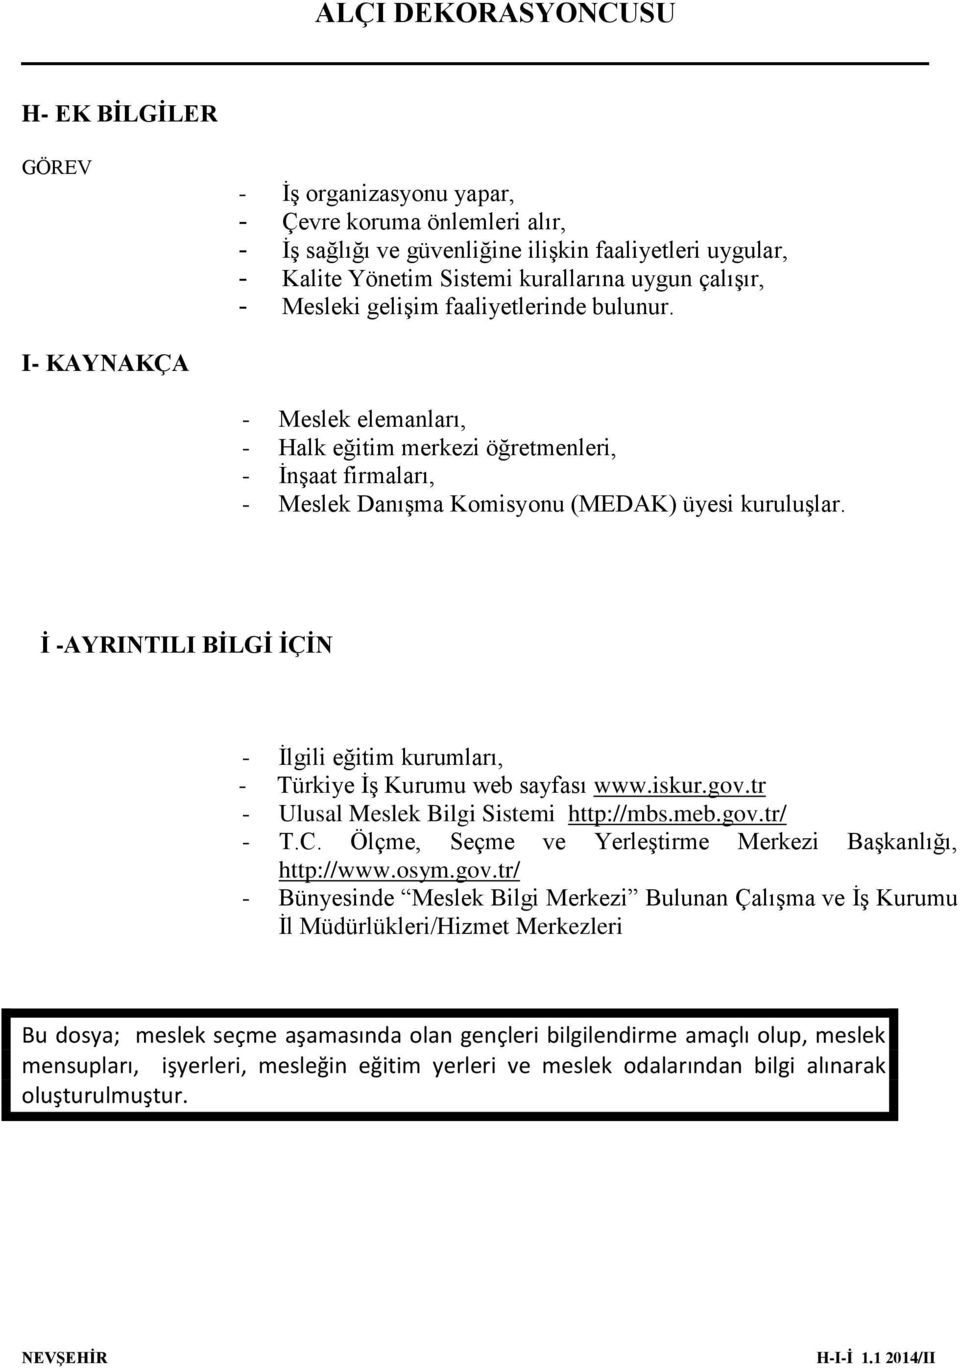 İ -AYRINTILI BİLGİ İÇİN - İlgili eğitim kurumları, - Türkiye İş Kurumu web sayfası www.iskur.gov.tr - Ulusal Meslek Bilgi Sistemi http://mbs.meb.gov.tr/ - T.C.